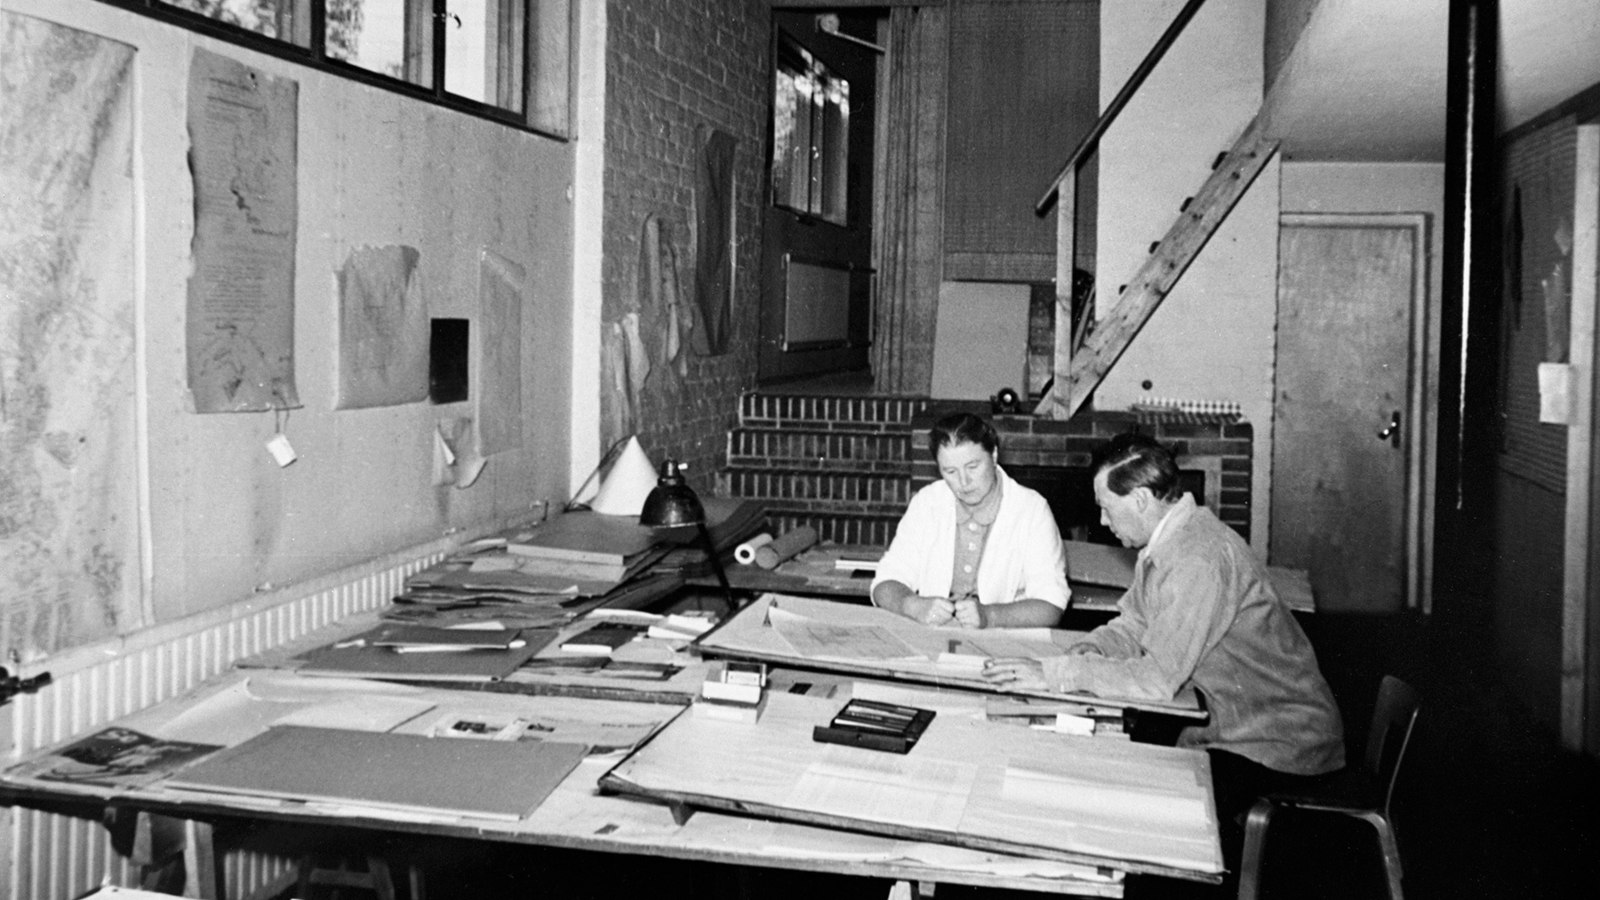 Kuvassa ovat Aino ja Alvar Aalto työskentelemässä arkkitehtitoimistossaan.  Huone on tilava ja työskentelytila oli alhaalla, jossa pariskunta työskenteli iso pöydän ääressä. Kuva o musta-valkoinen.